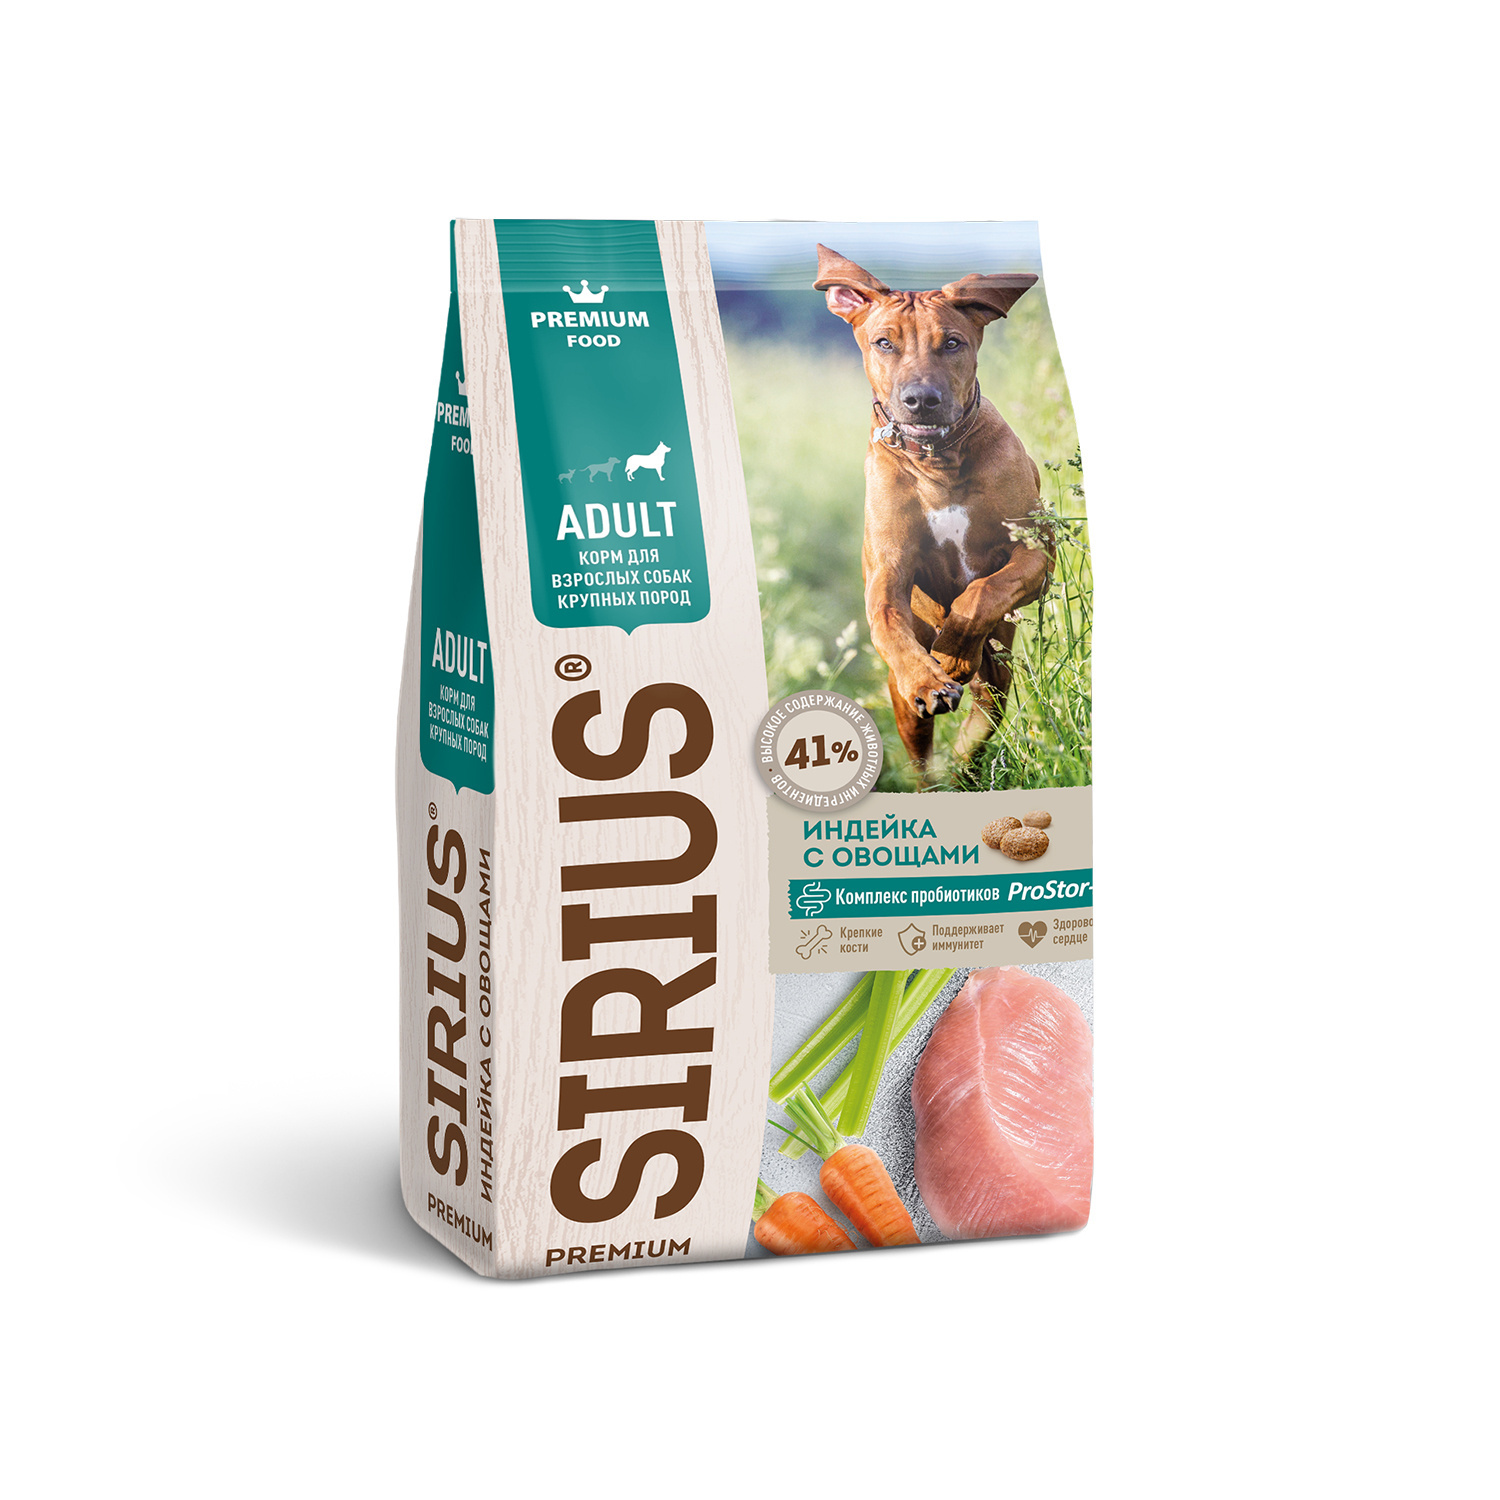 Sirius Sirius сухой корм для собак крупных пород, индейка с овощами (2 кг) сухой корм для собак sirius 3 мяса с овощами при повышенной активности 2 кг